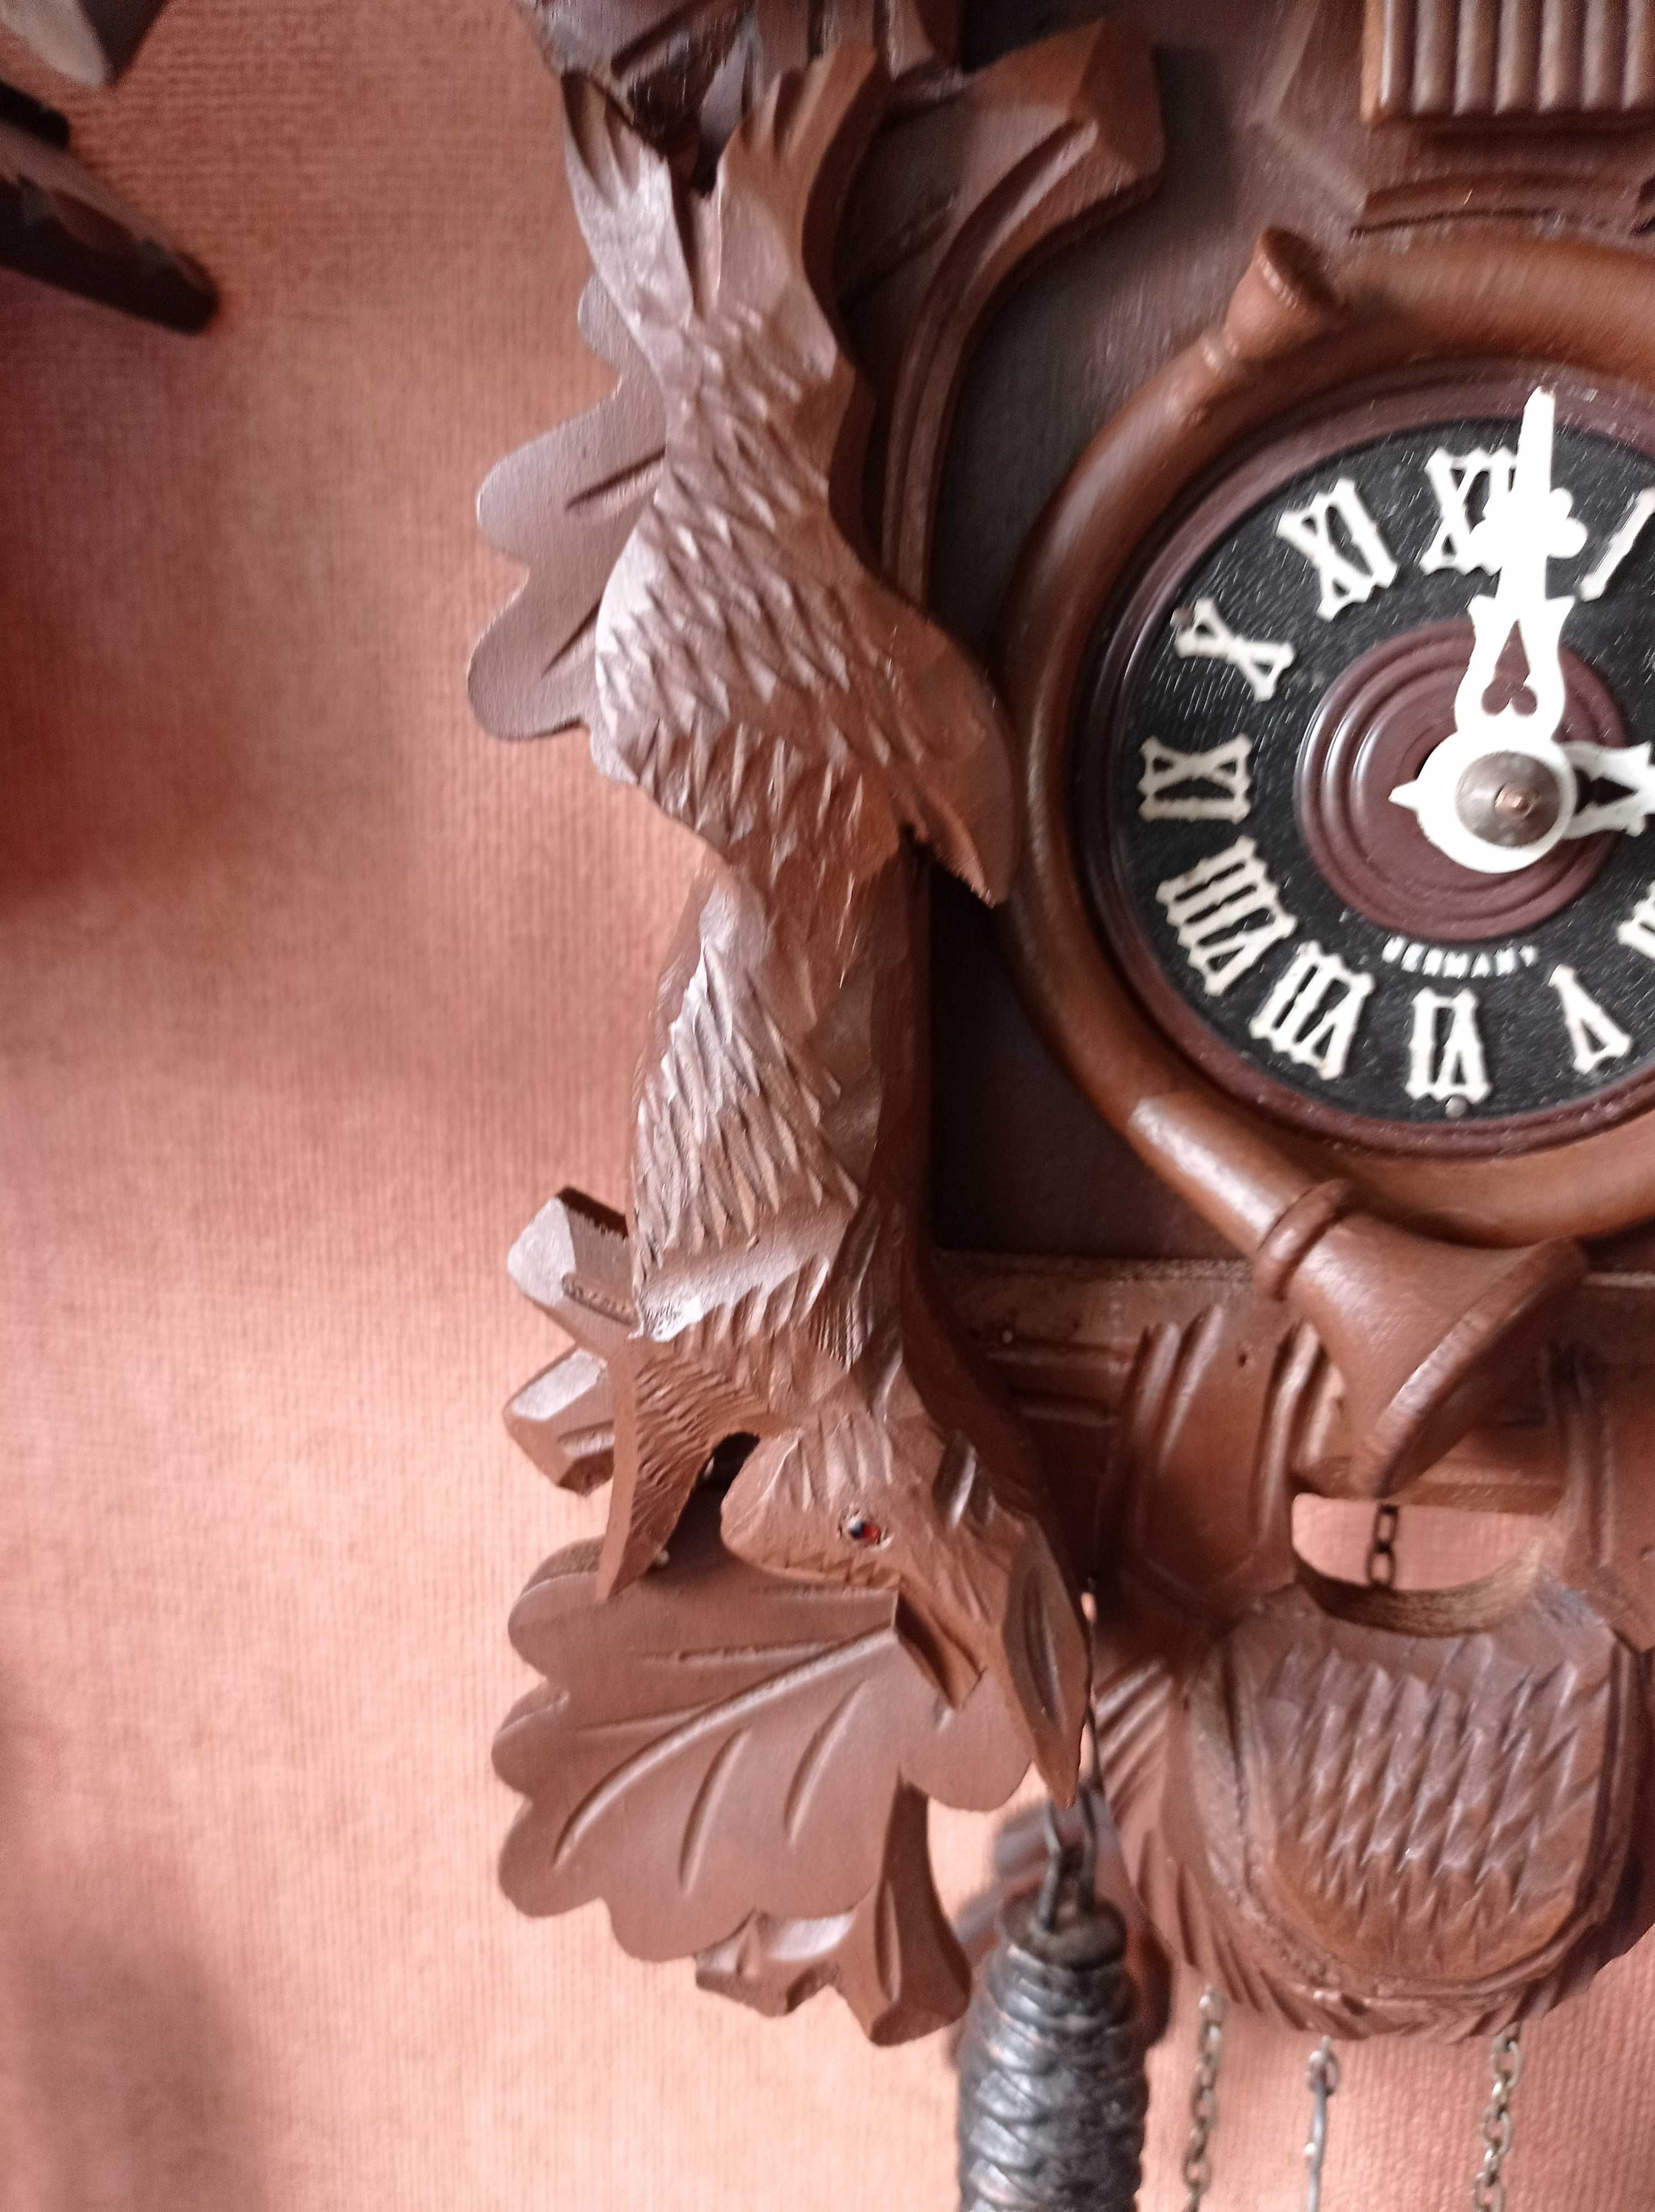 Ładny zegar z kukułką-motywy myśliwskie: jeleń,zając,ptak.